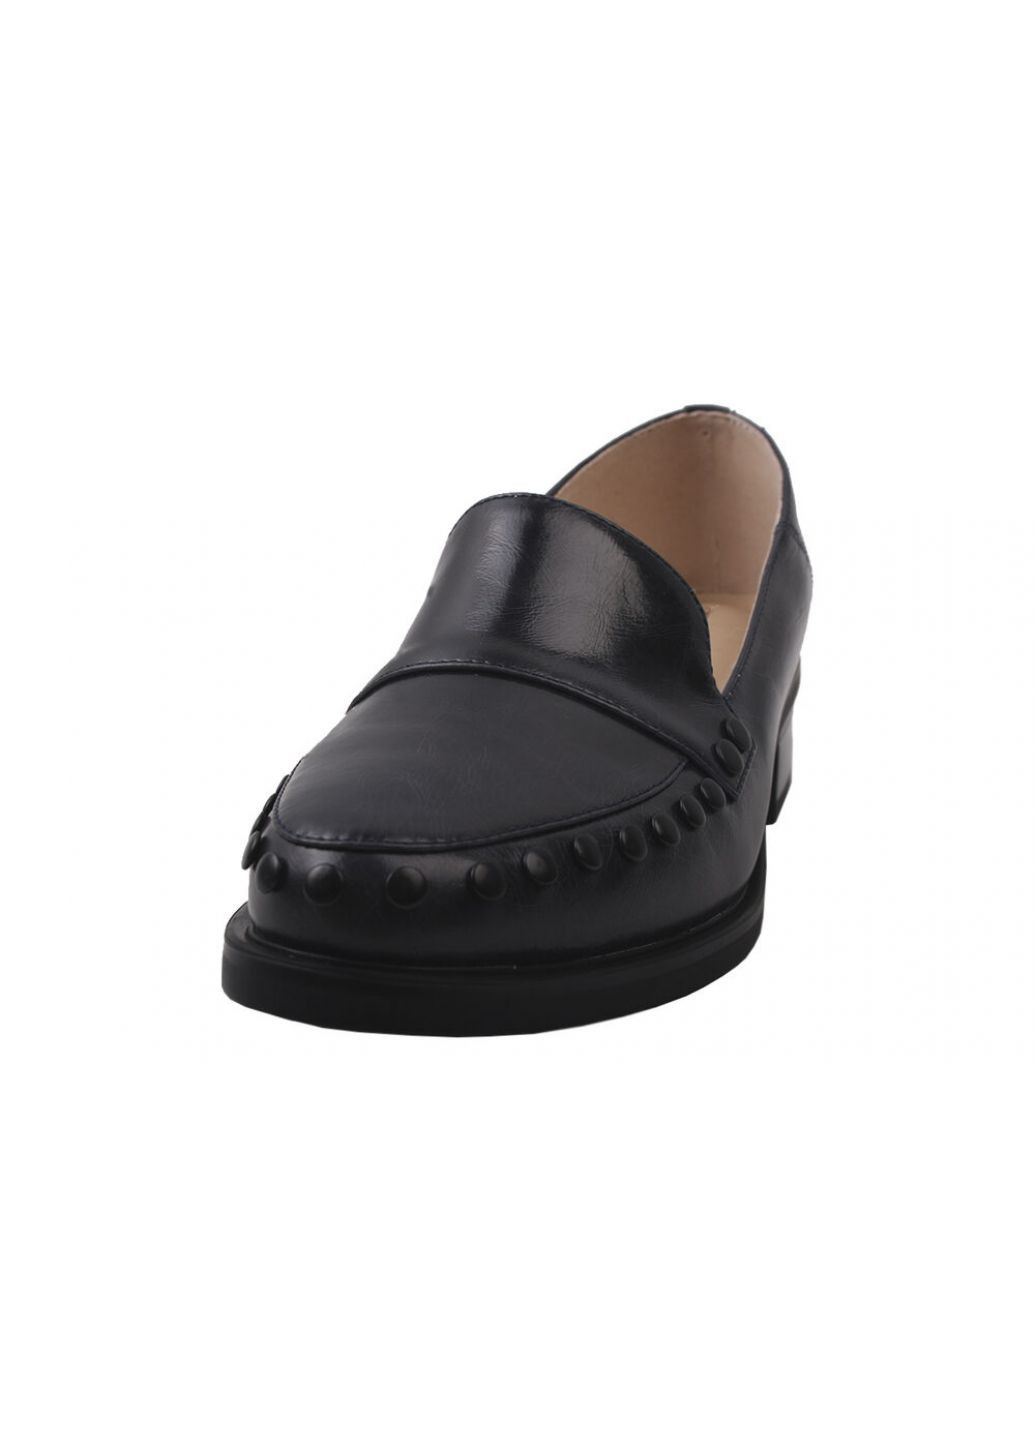 Туфлі жіночі з натуральної шкіри, на низькому ходу, чорні, Brocoly 266-9dtc (257420065)